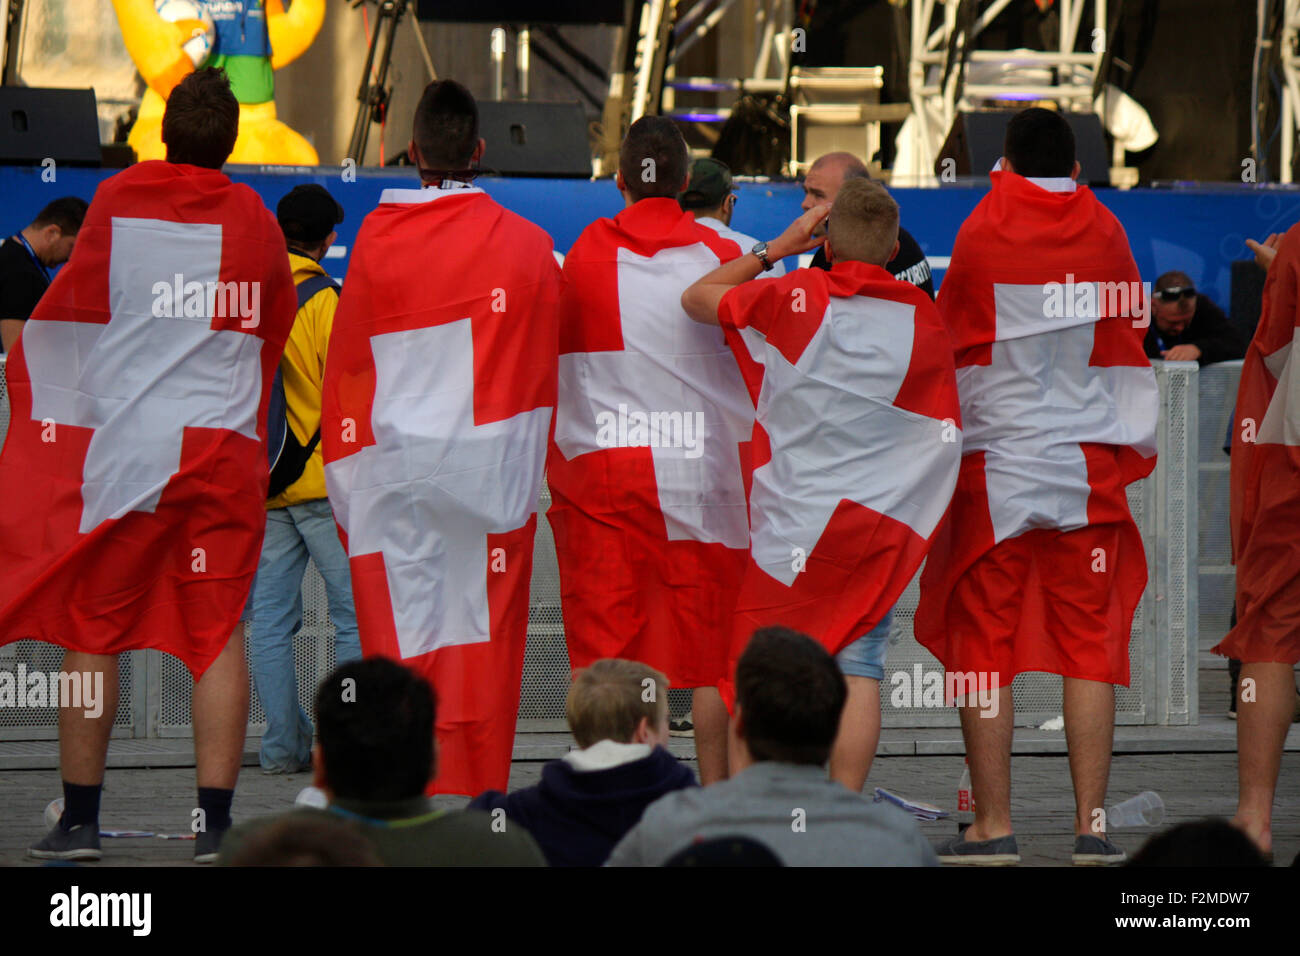 Impressionen von der Fanmeile am Brandenburger Tor beim Spiel Schweiz gegen Argentinien, 1. Juli 2014, Berlino. Foto Stock